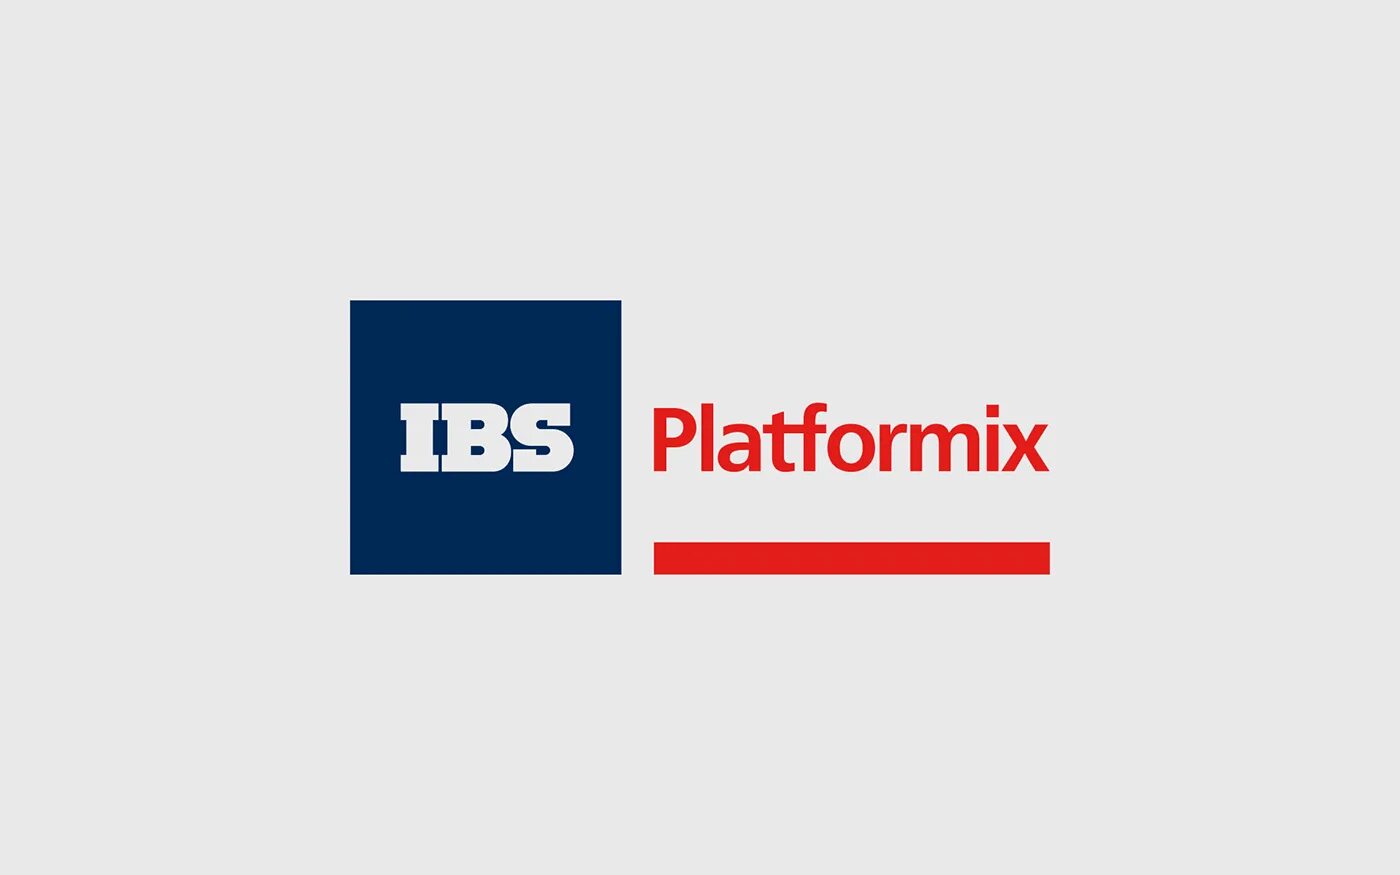 Ibs data. IBS логотип. IBS Platformix компания. Платформикс логотип. ИБС Платформикс.